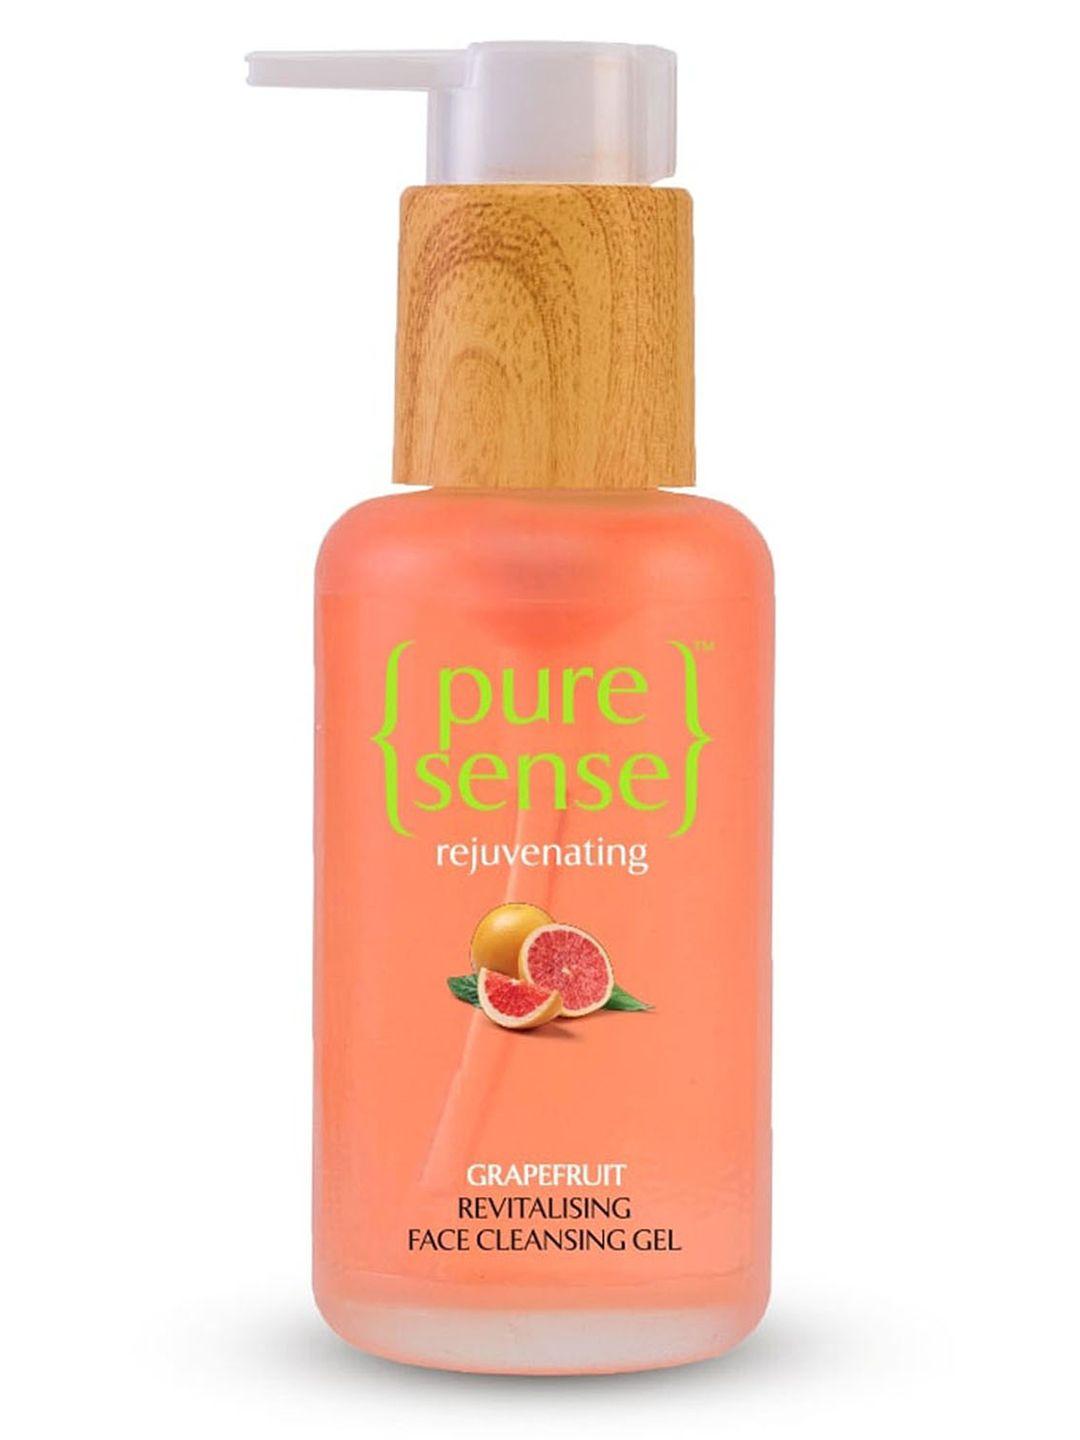 pure sense rejuvenating grapefruit revitalising face cleansing gel 100 ml